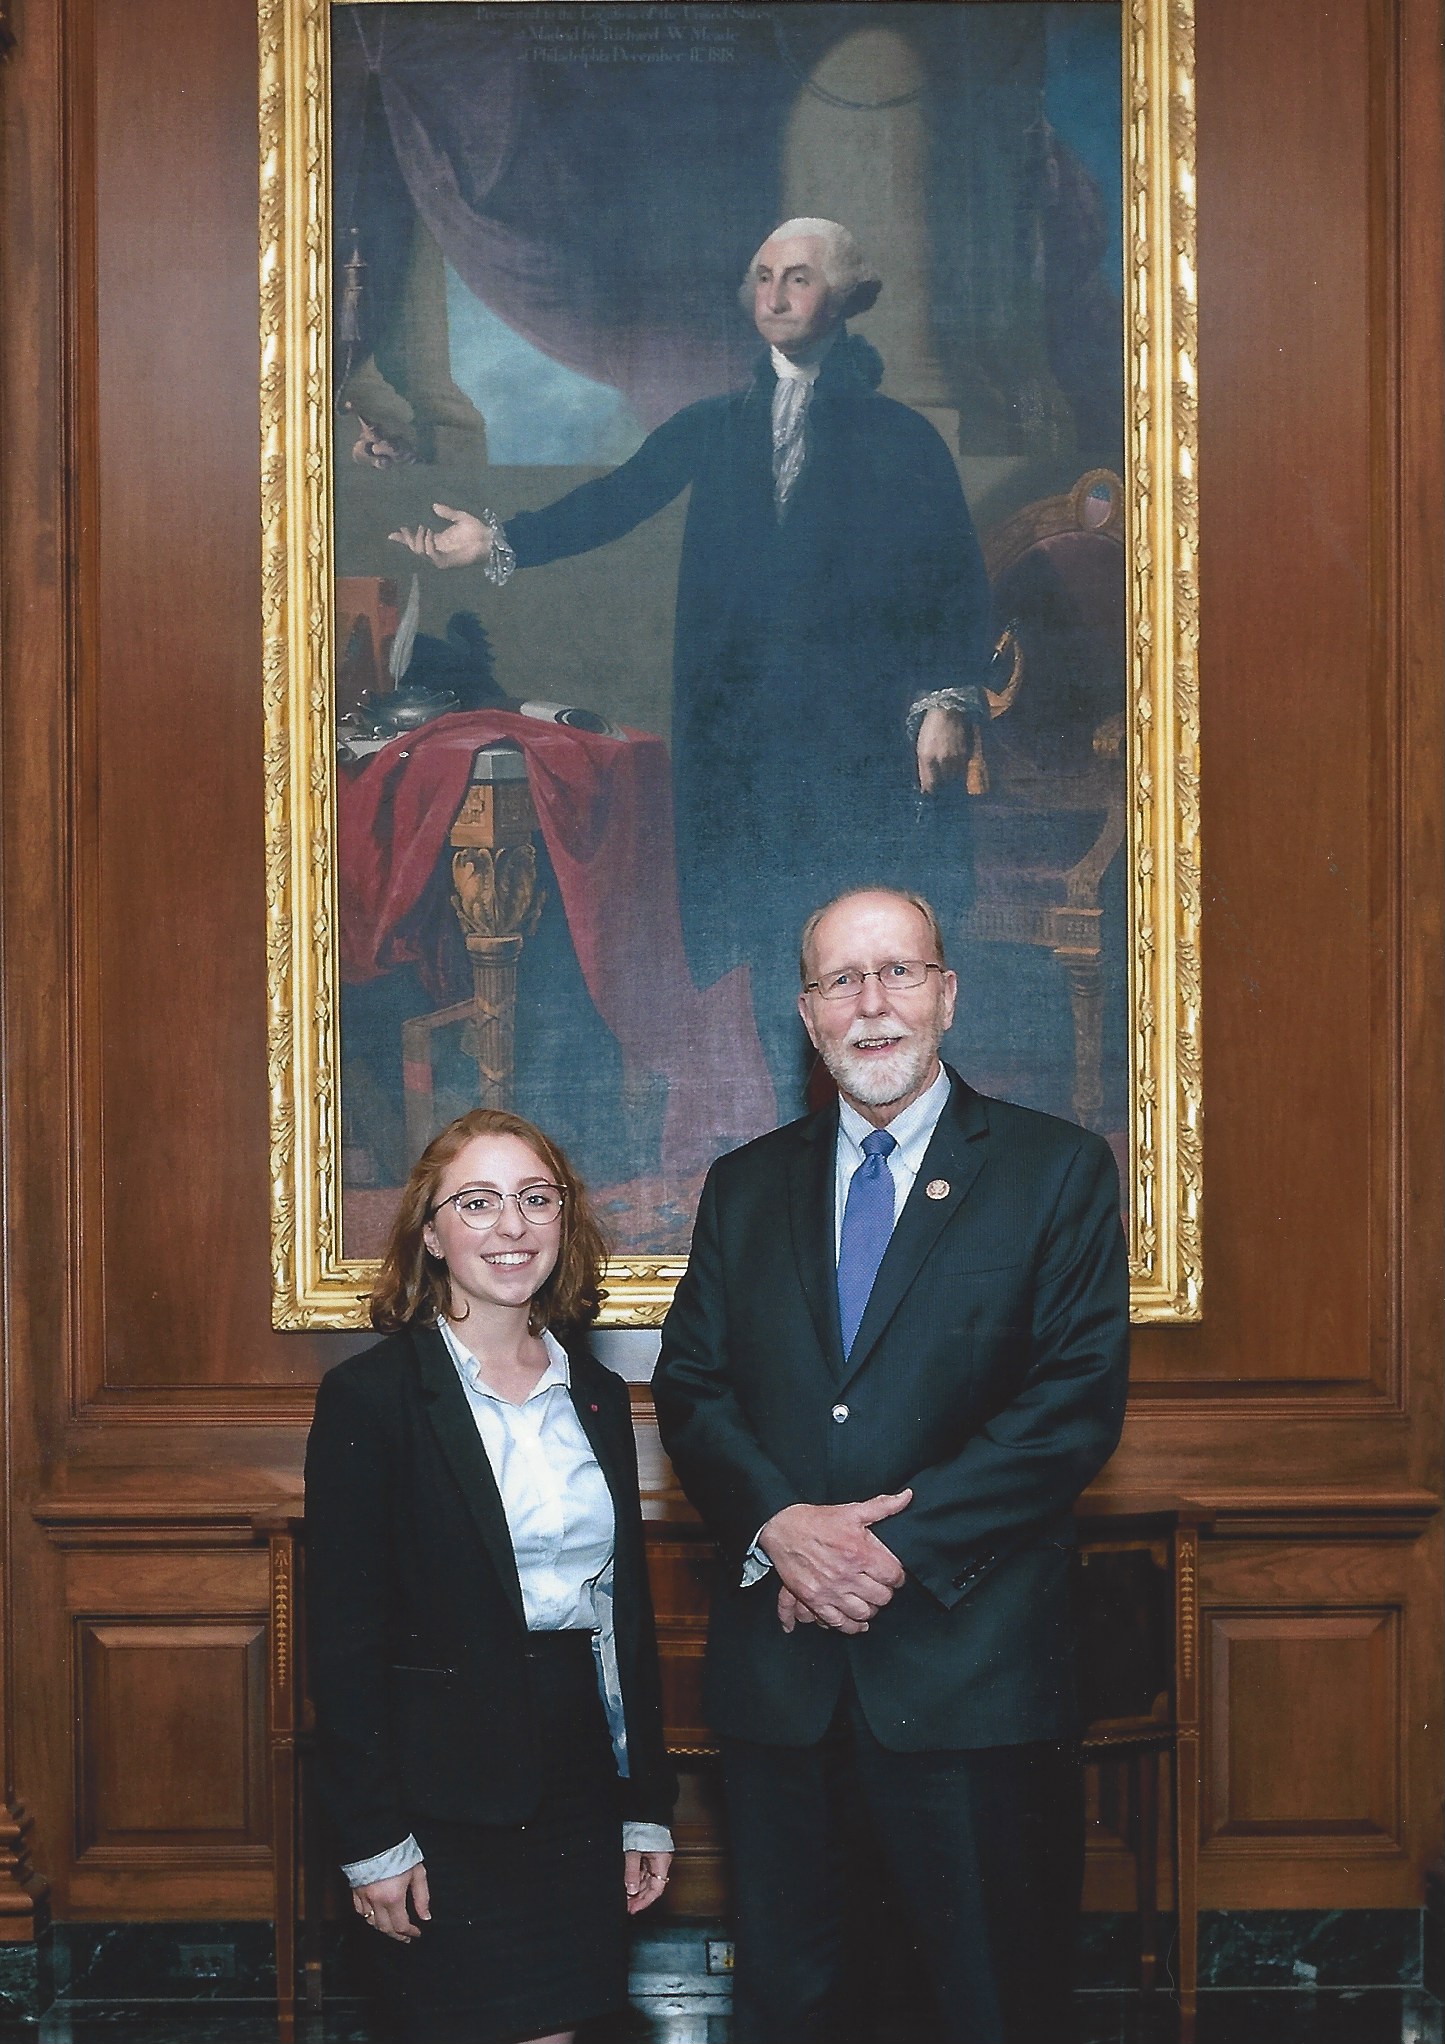 Anna Unger and Congressman Loebsack